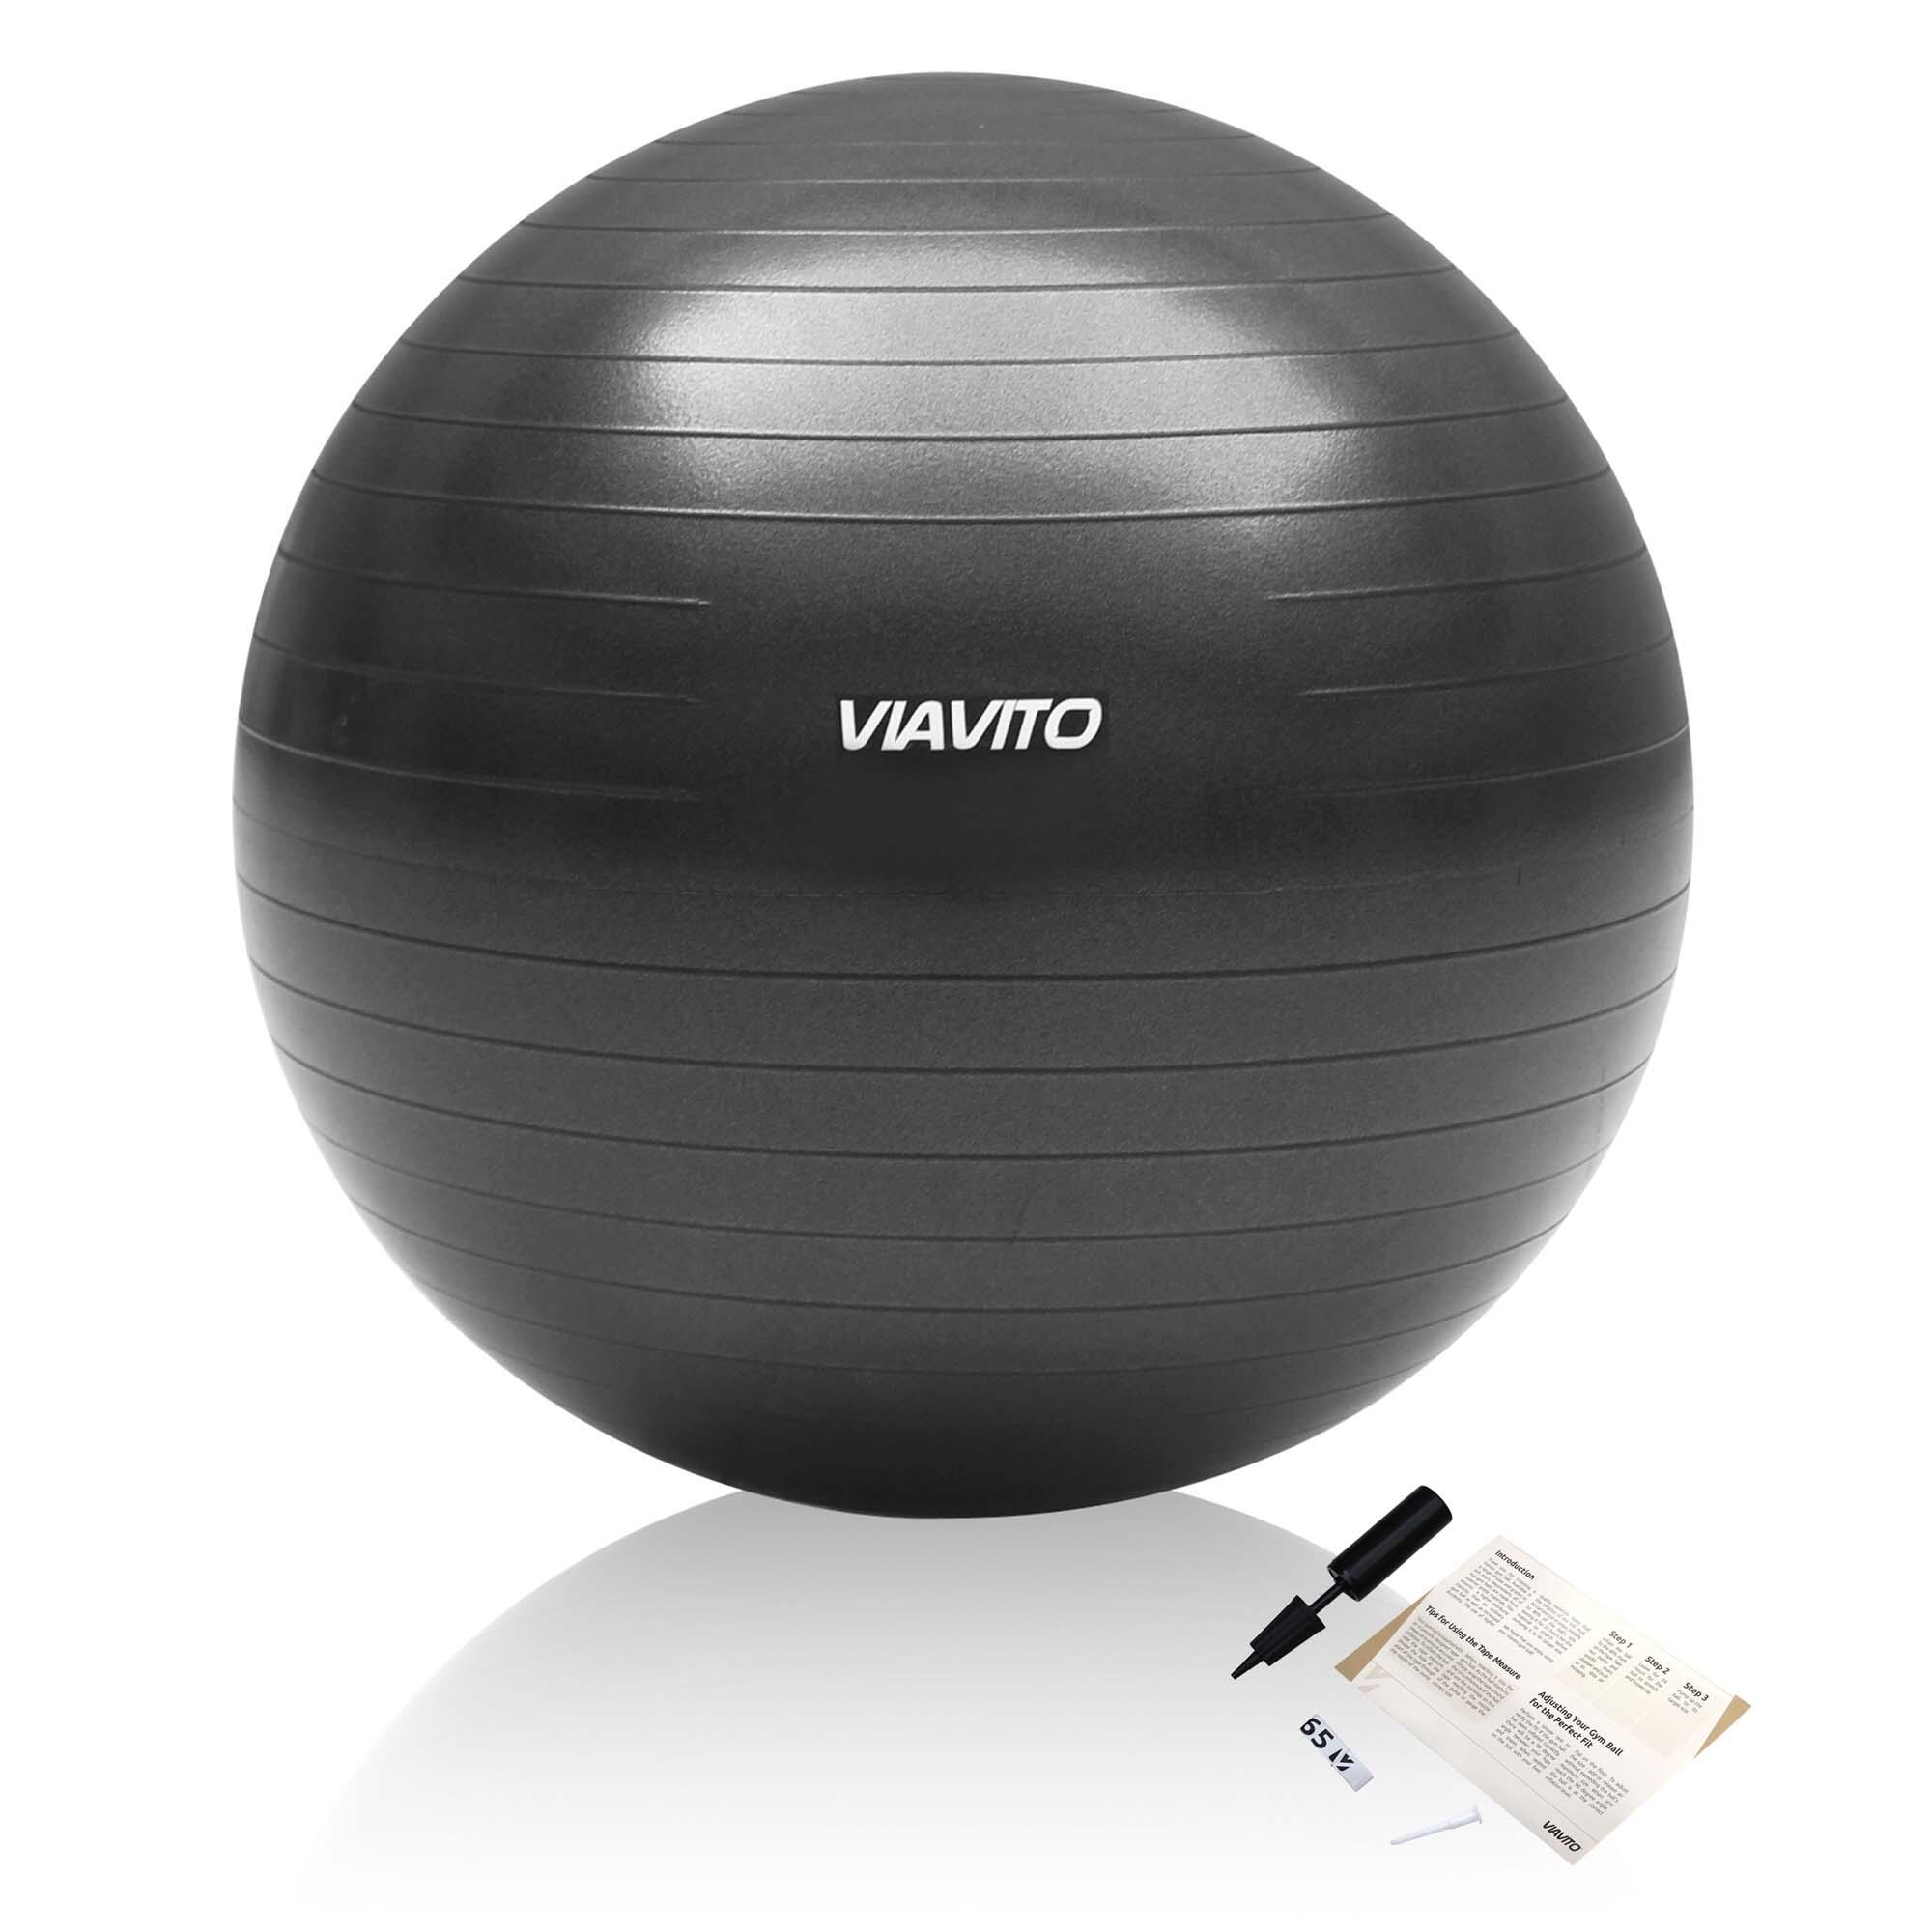 VIAVITO Viavito 65cm Studio Antiburst Gym Ball